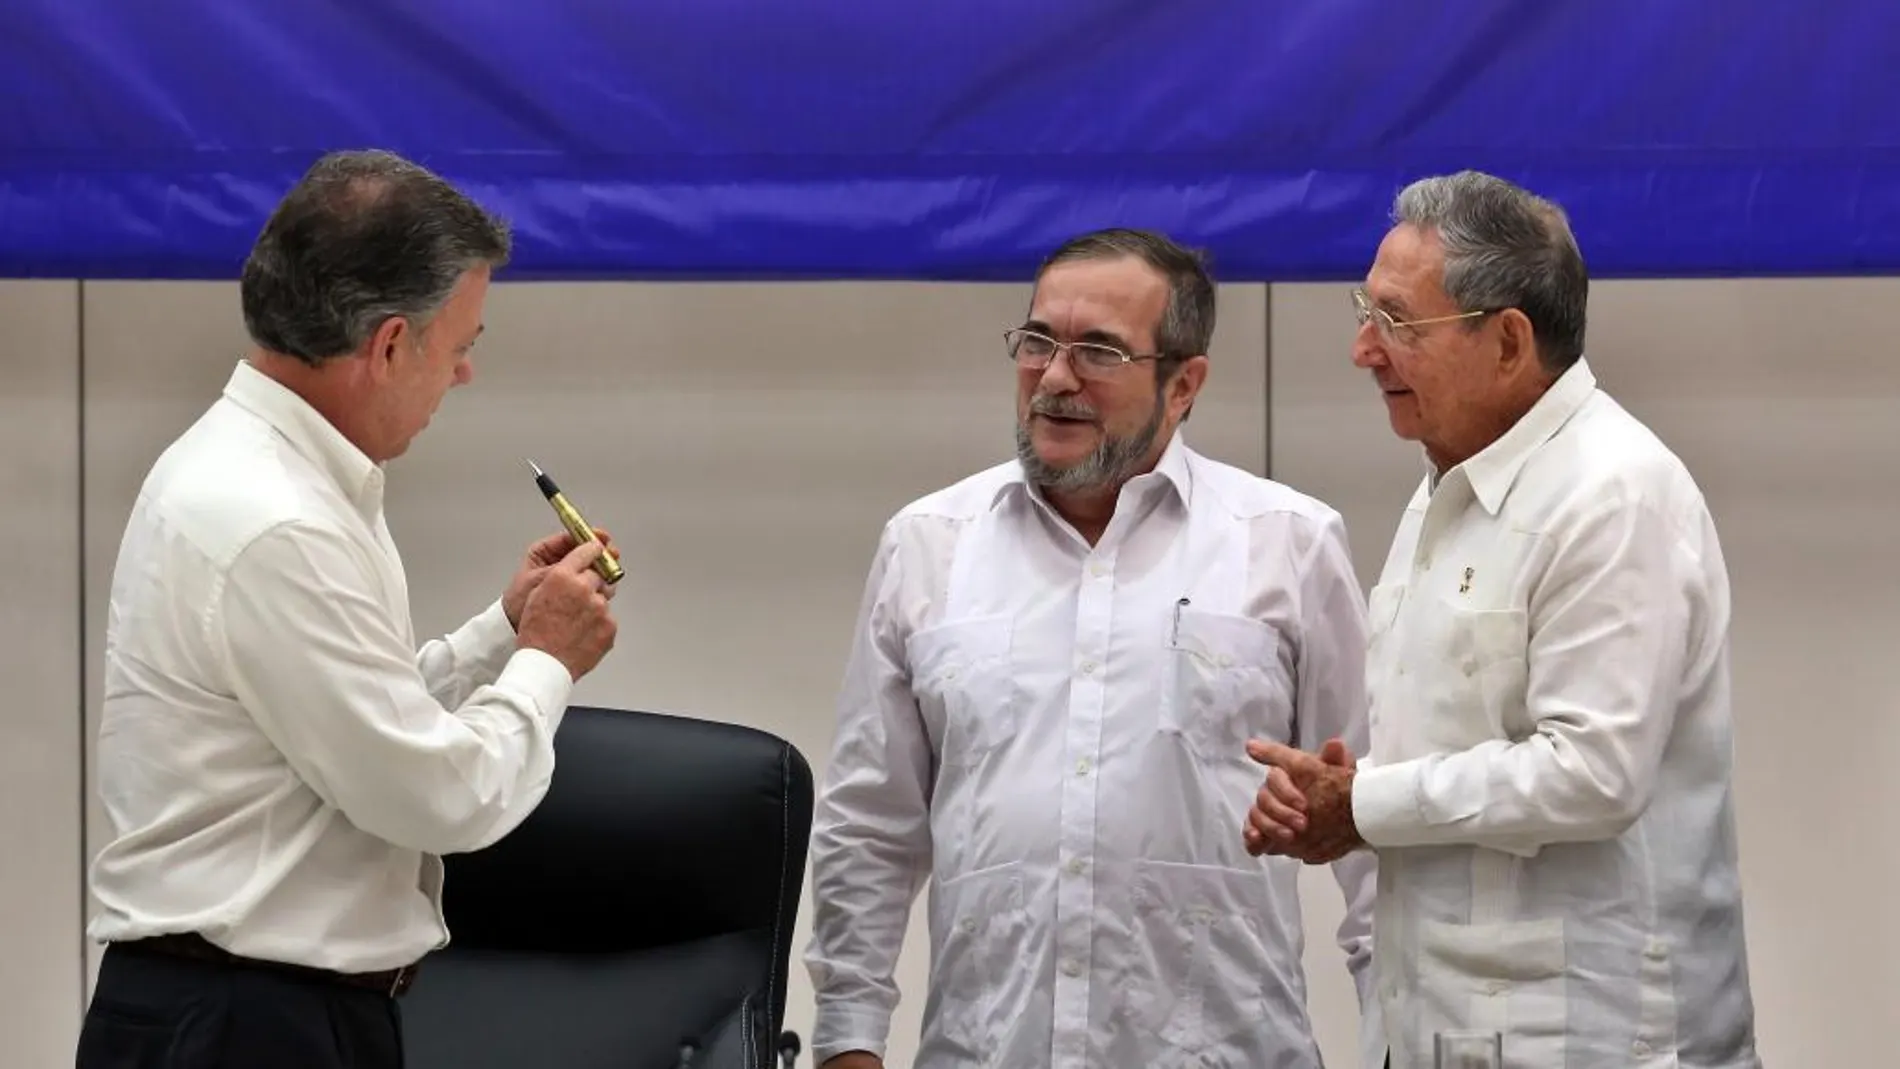 El líder de las FARC, Rodrigo Londoño Echeverri, alias "Timochenko"(c), habla con los presidentes de Cuba, Raúl Castro (d), y de Colombia, Juan Manuel Santos (i), en La Habana (Cuba)